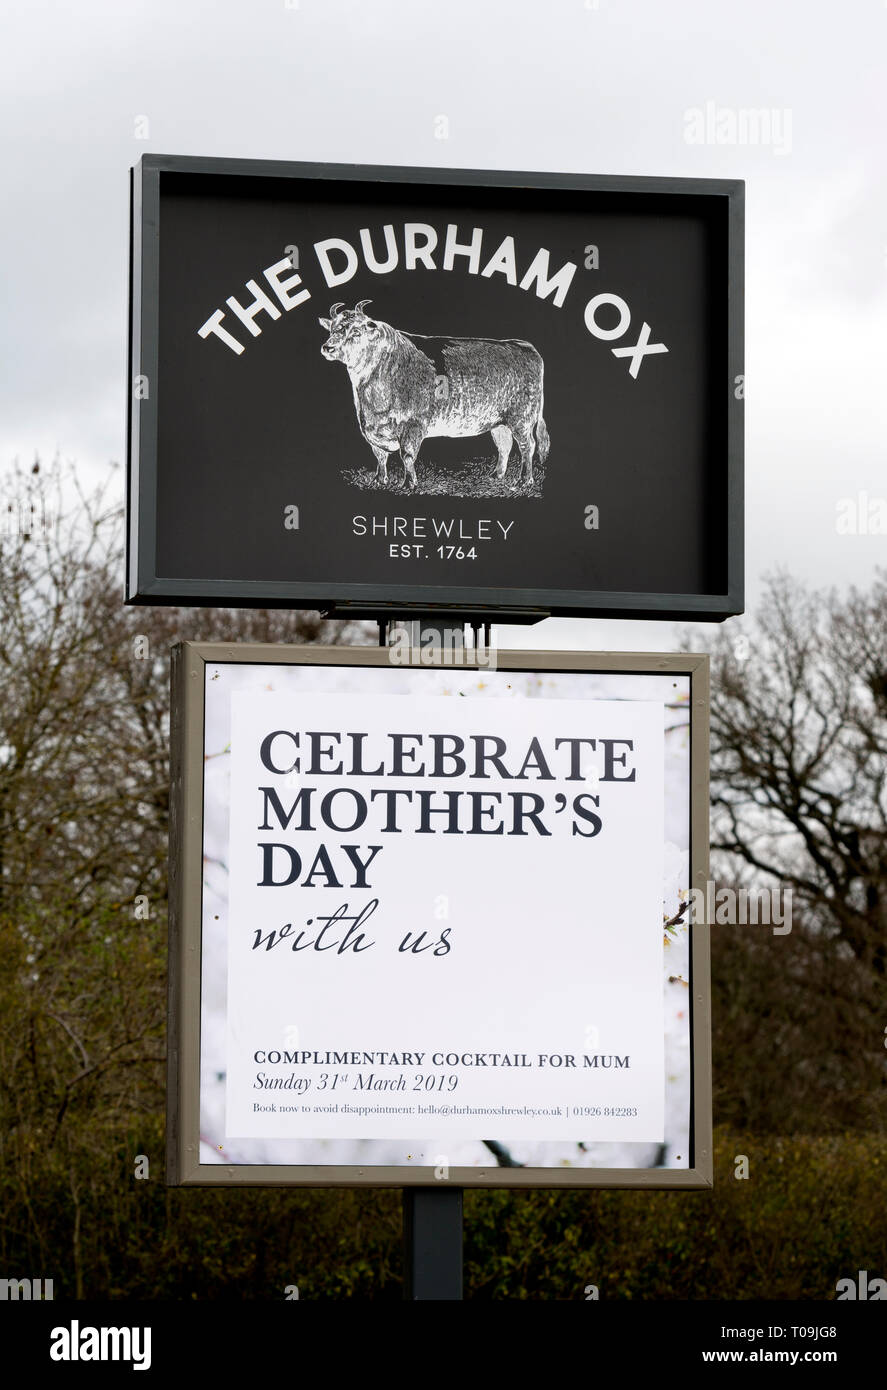 Die Durham Ox pub Schild, Shrewley, Warwickshire, England, Großbritannien Stockfoto